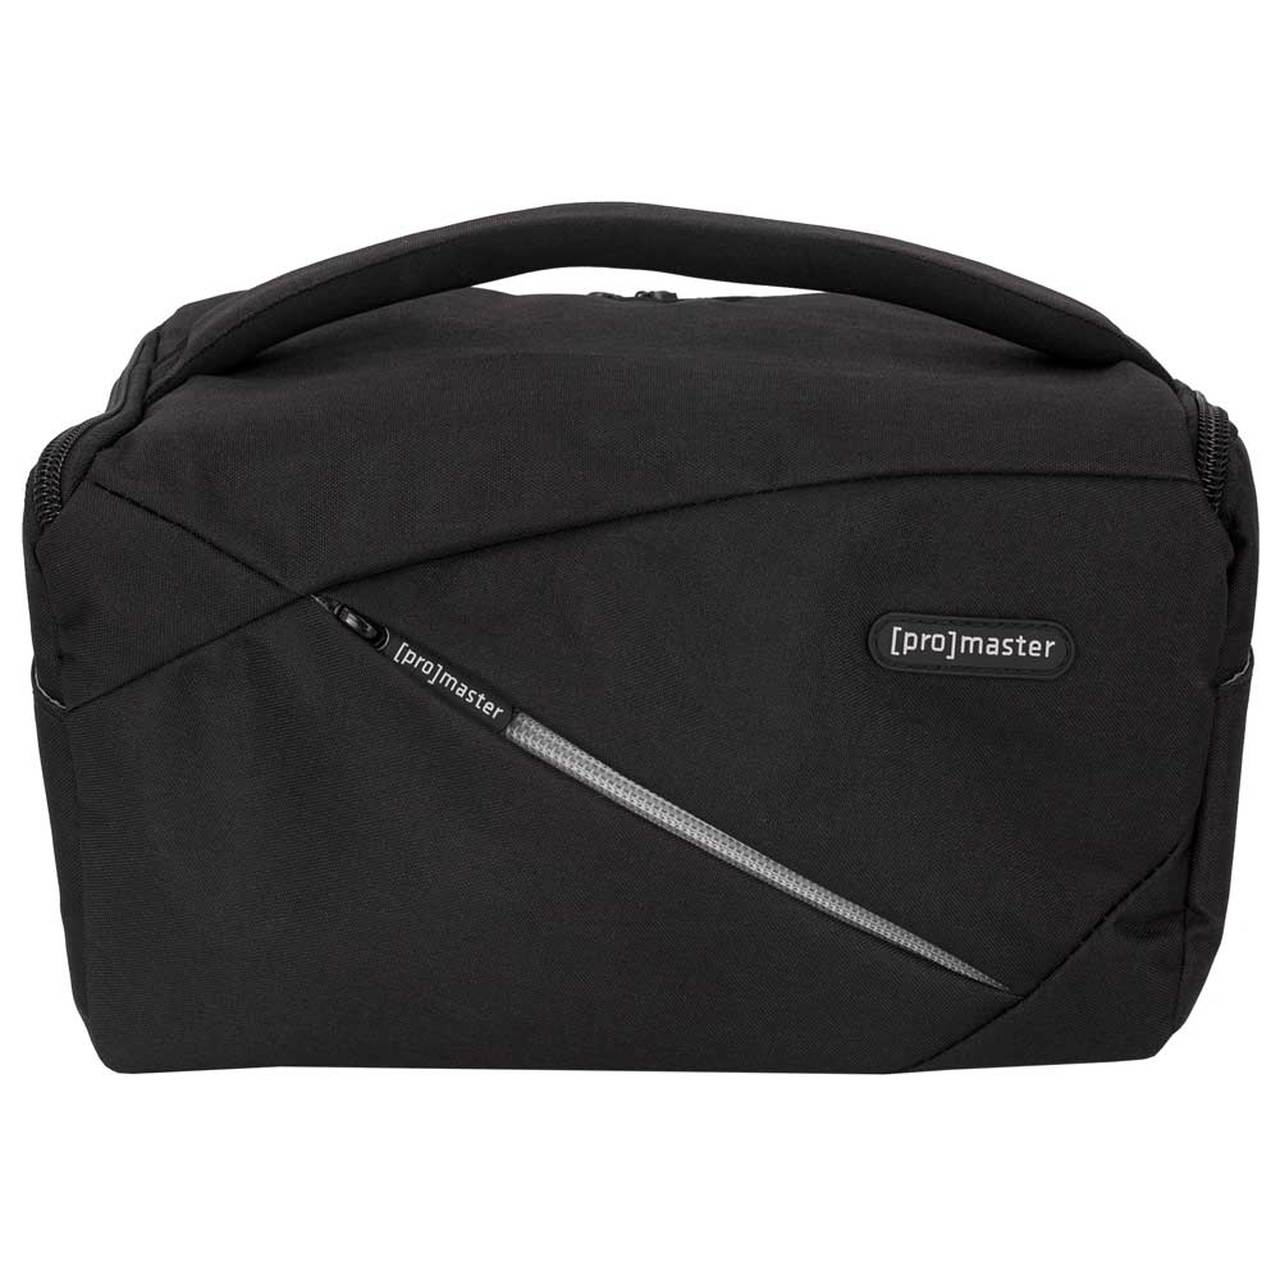 Promaster 7251 Impulse Shoulder Bag  Large - Black